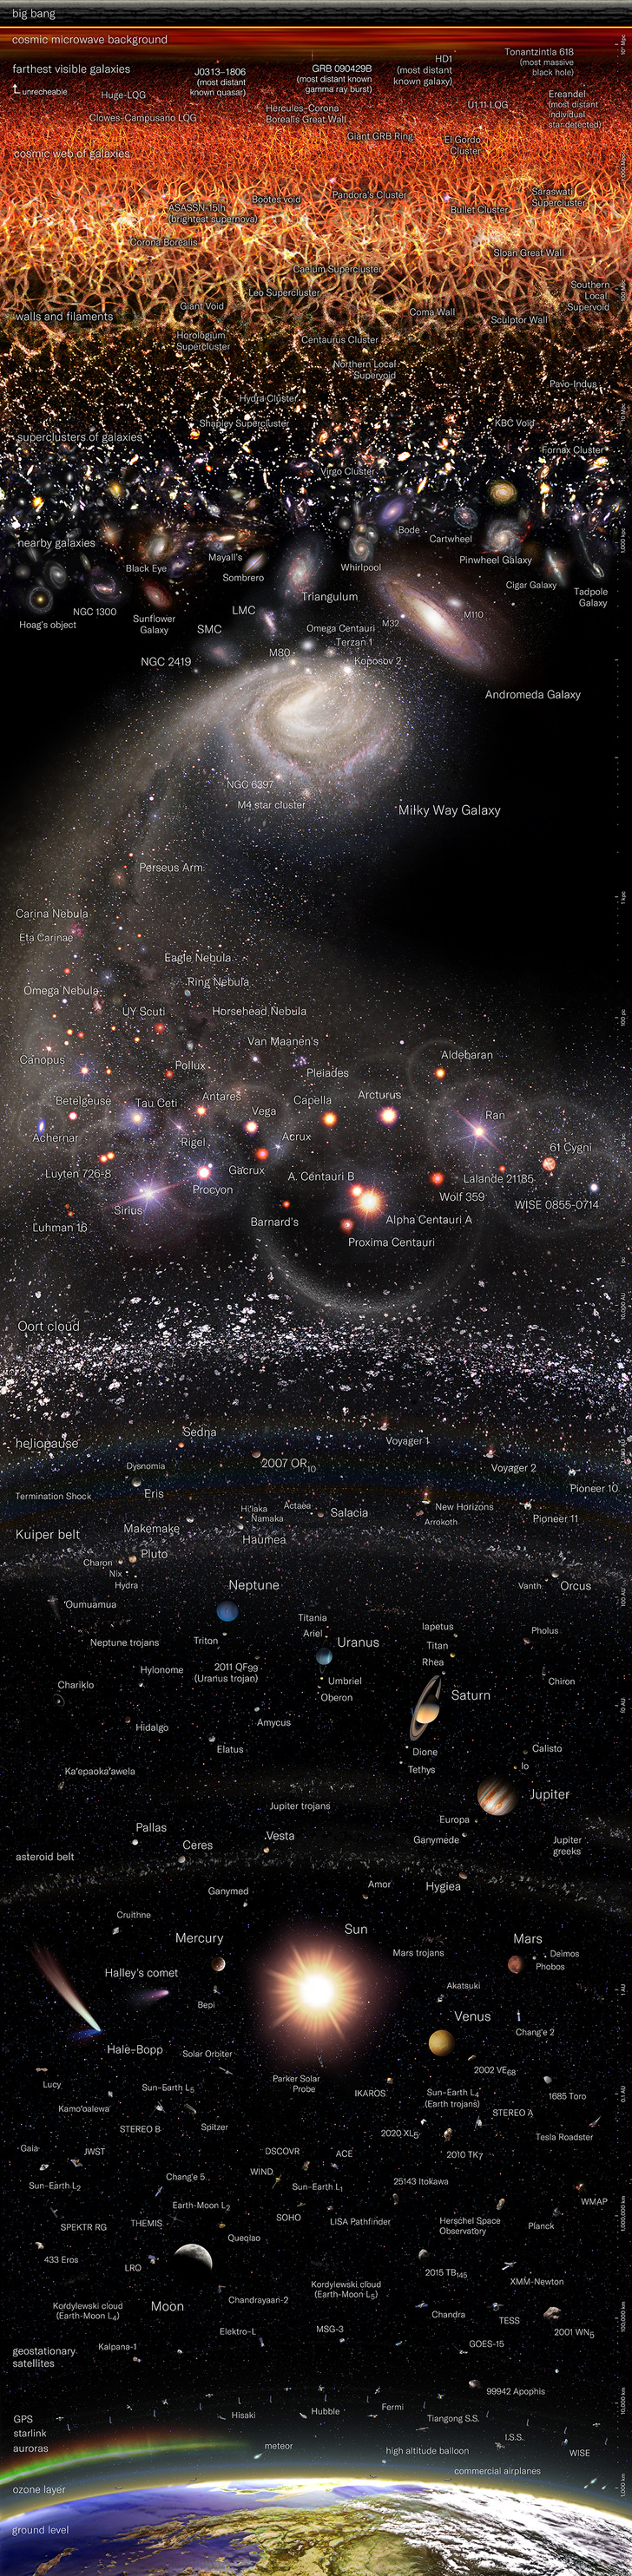 Бесконечность на одной картинке: рассматриваем научную карту Вселенной от аргентинского художника